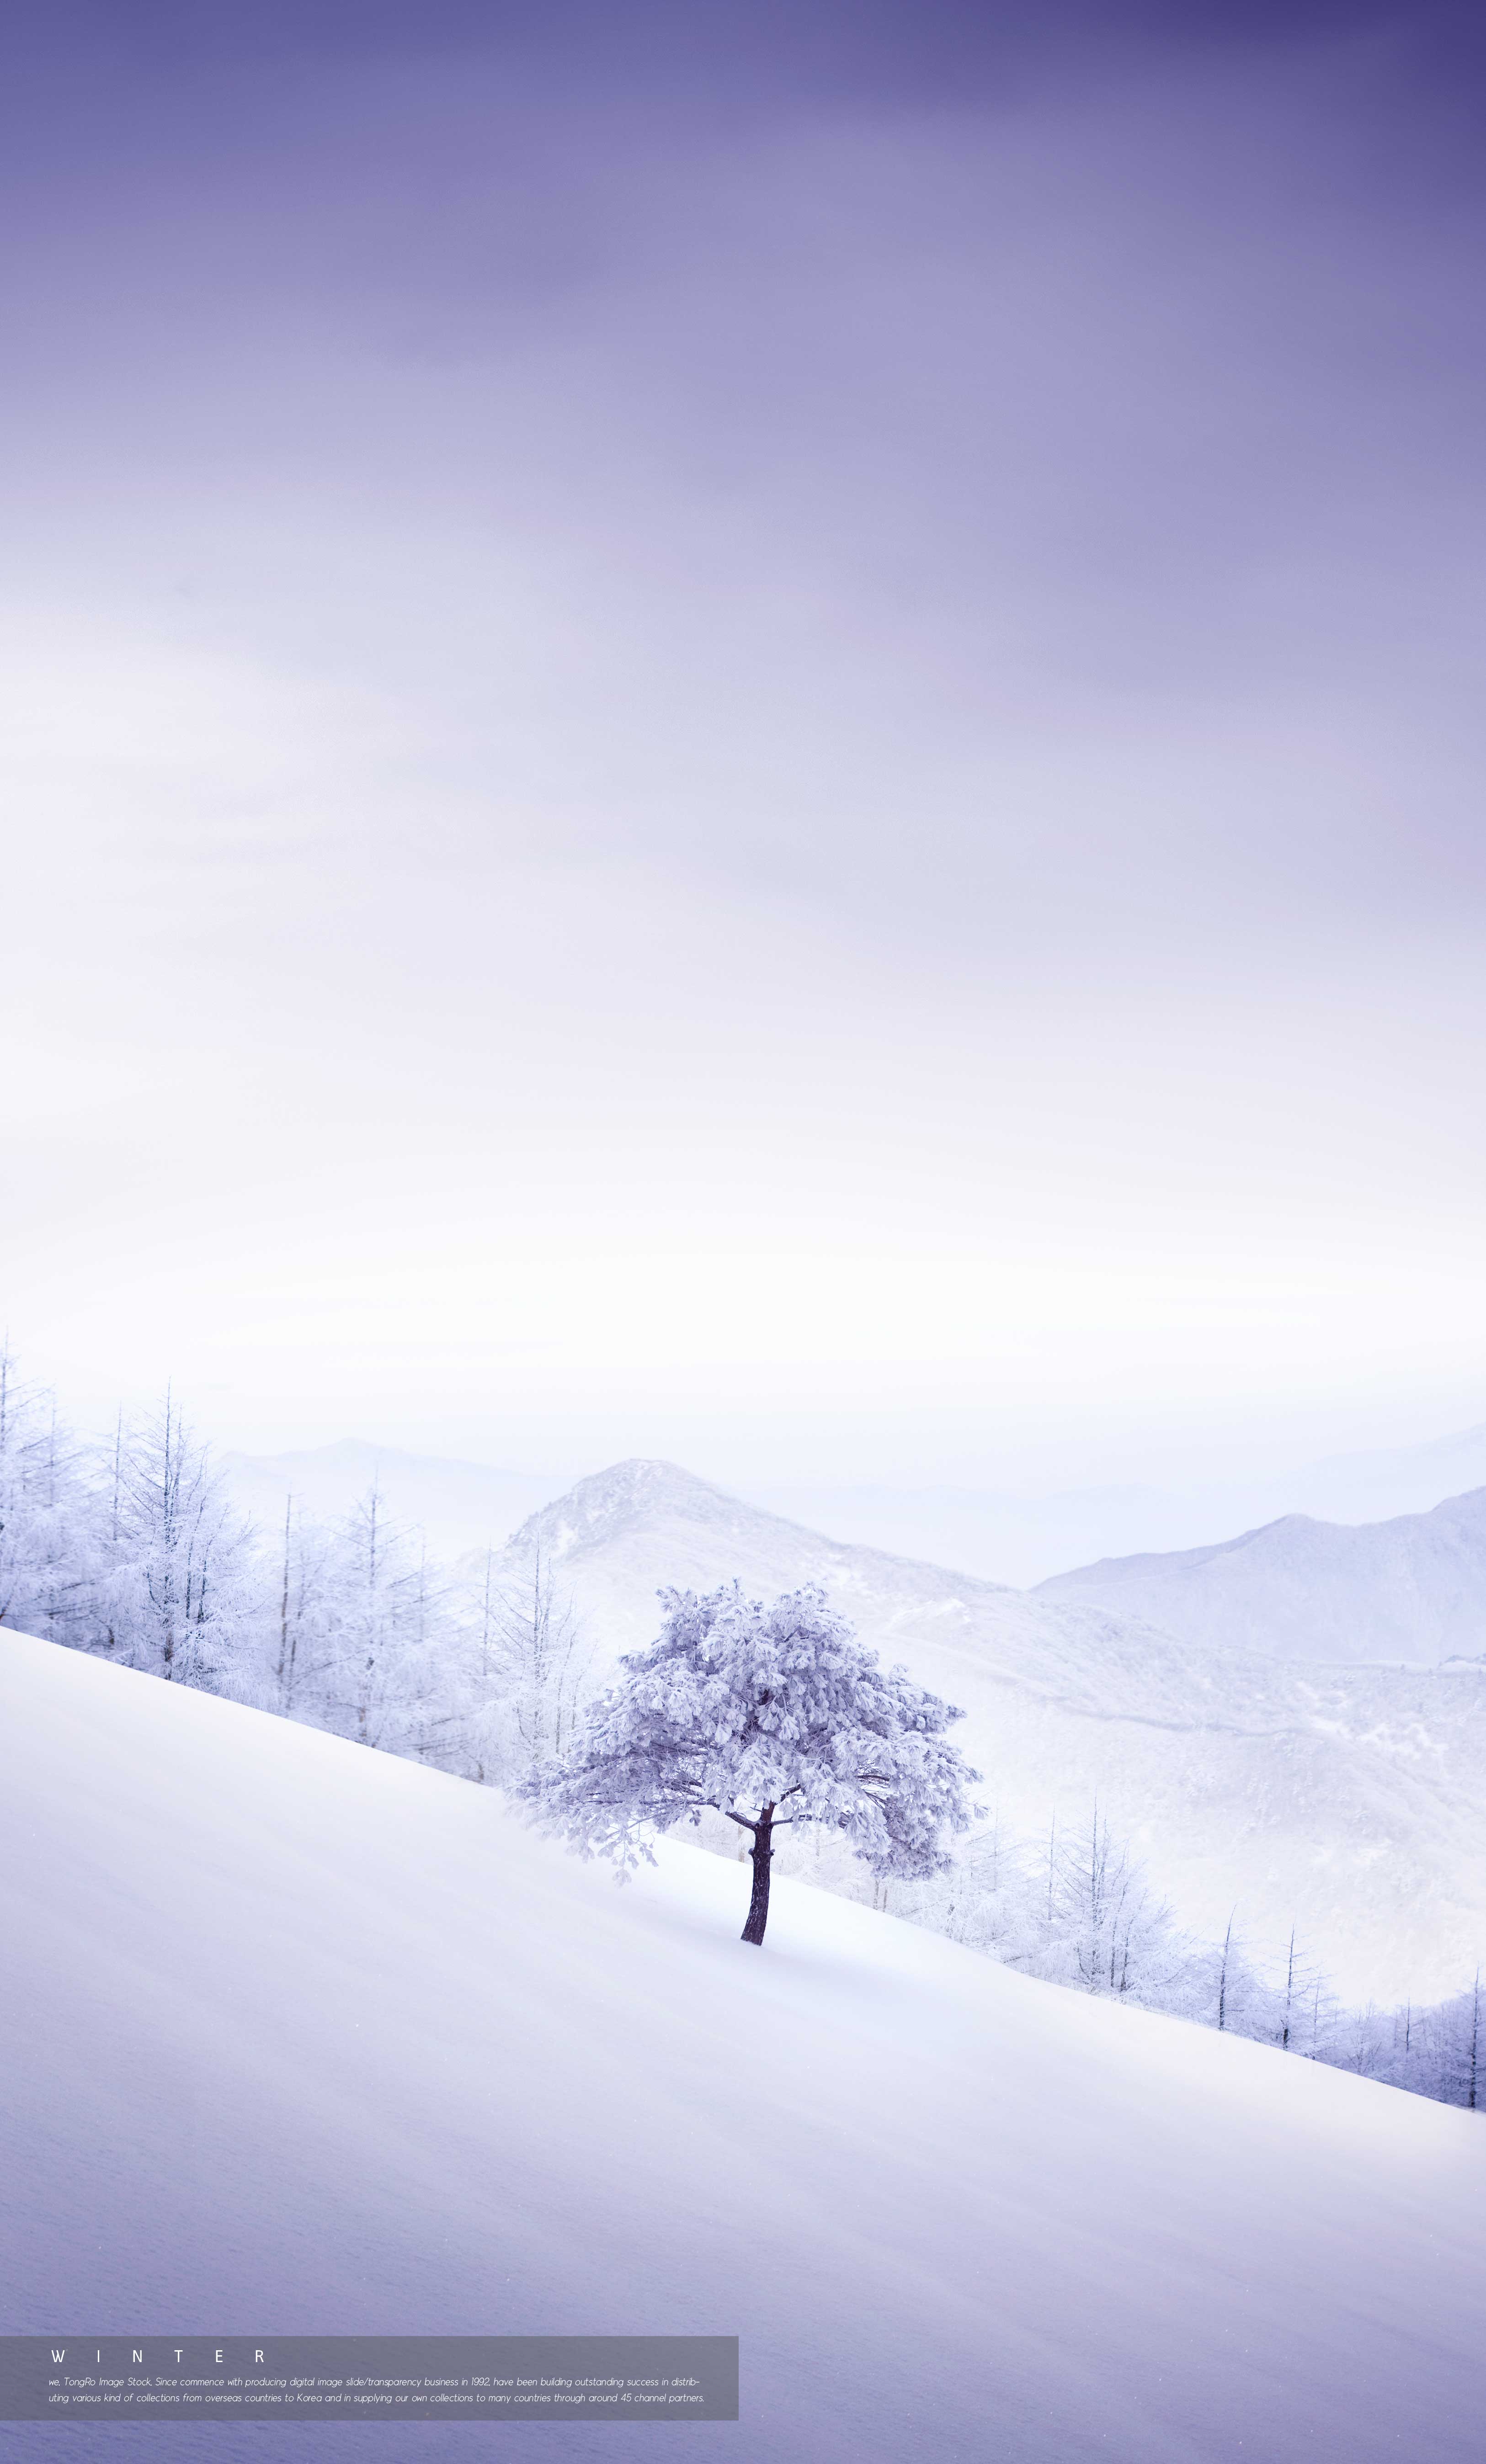 冬季背景雪山松林海报设计psd素材设计素材模板